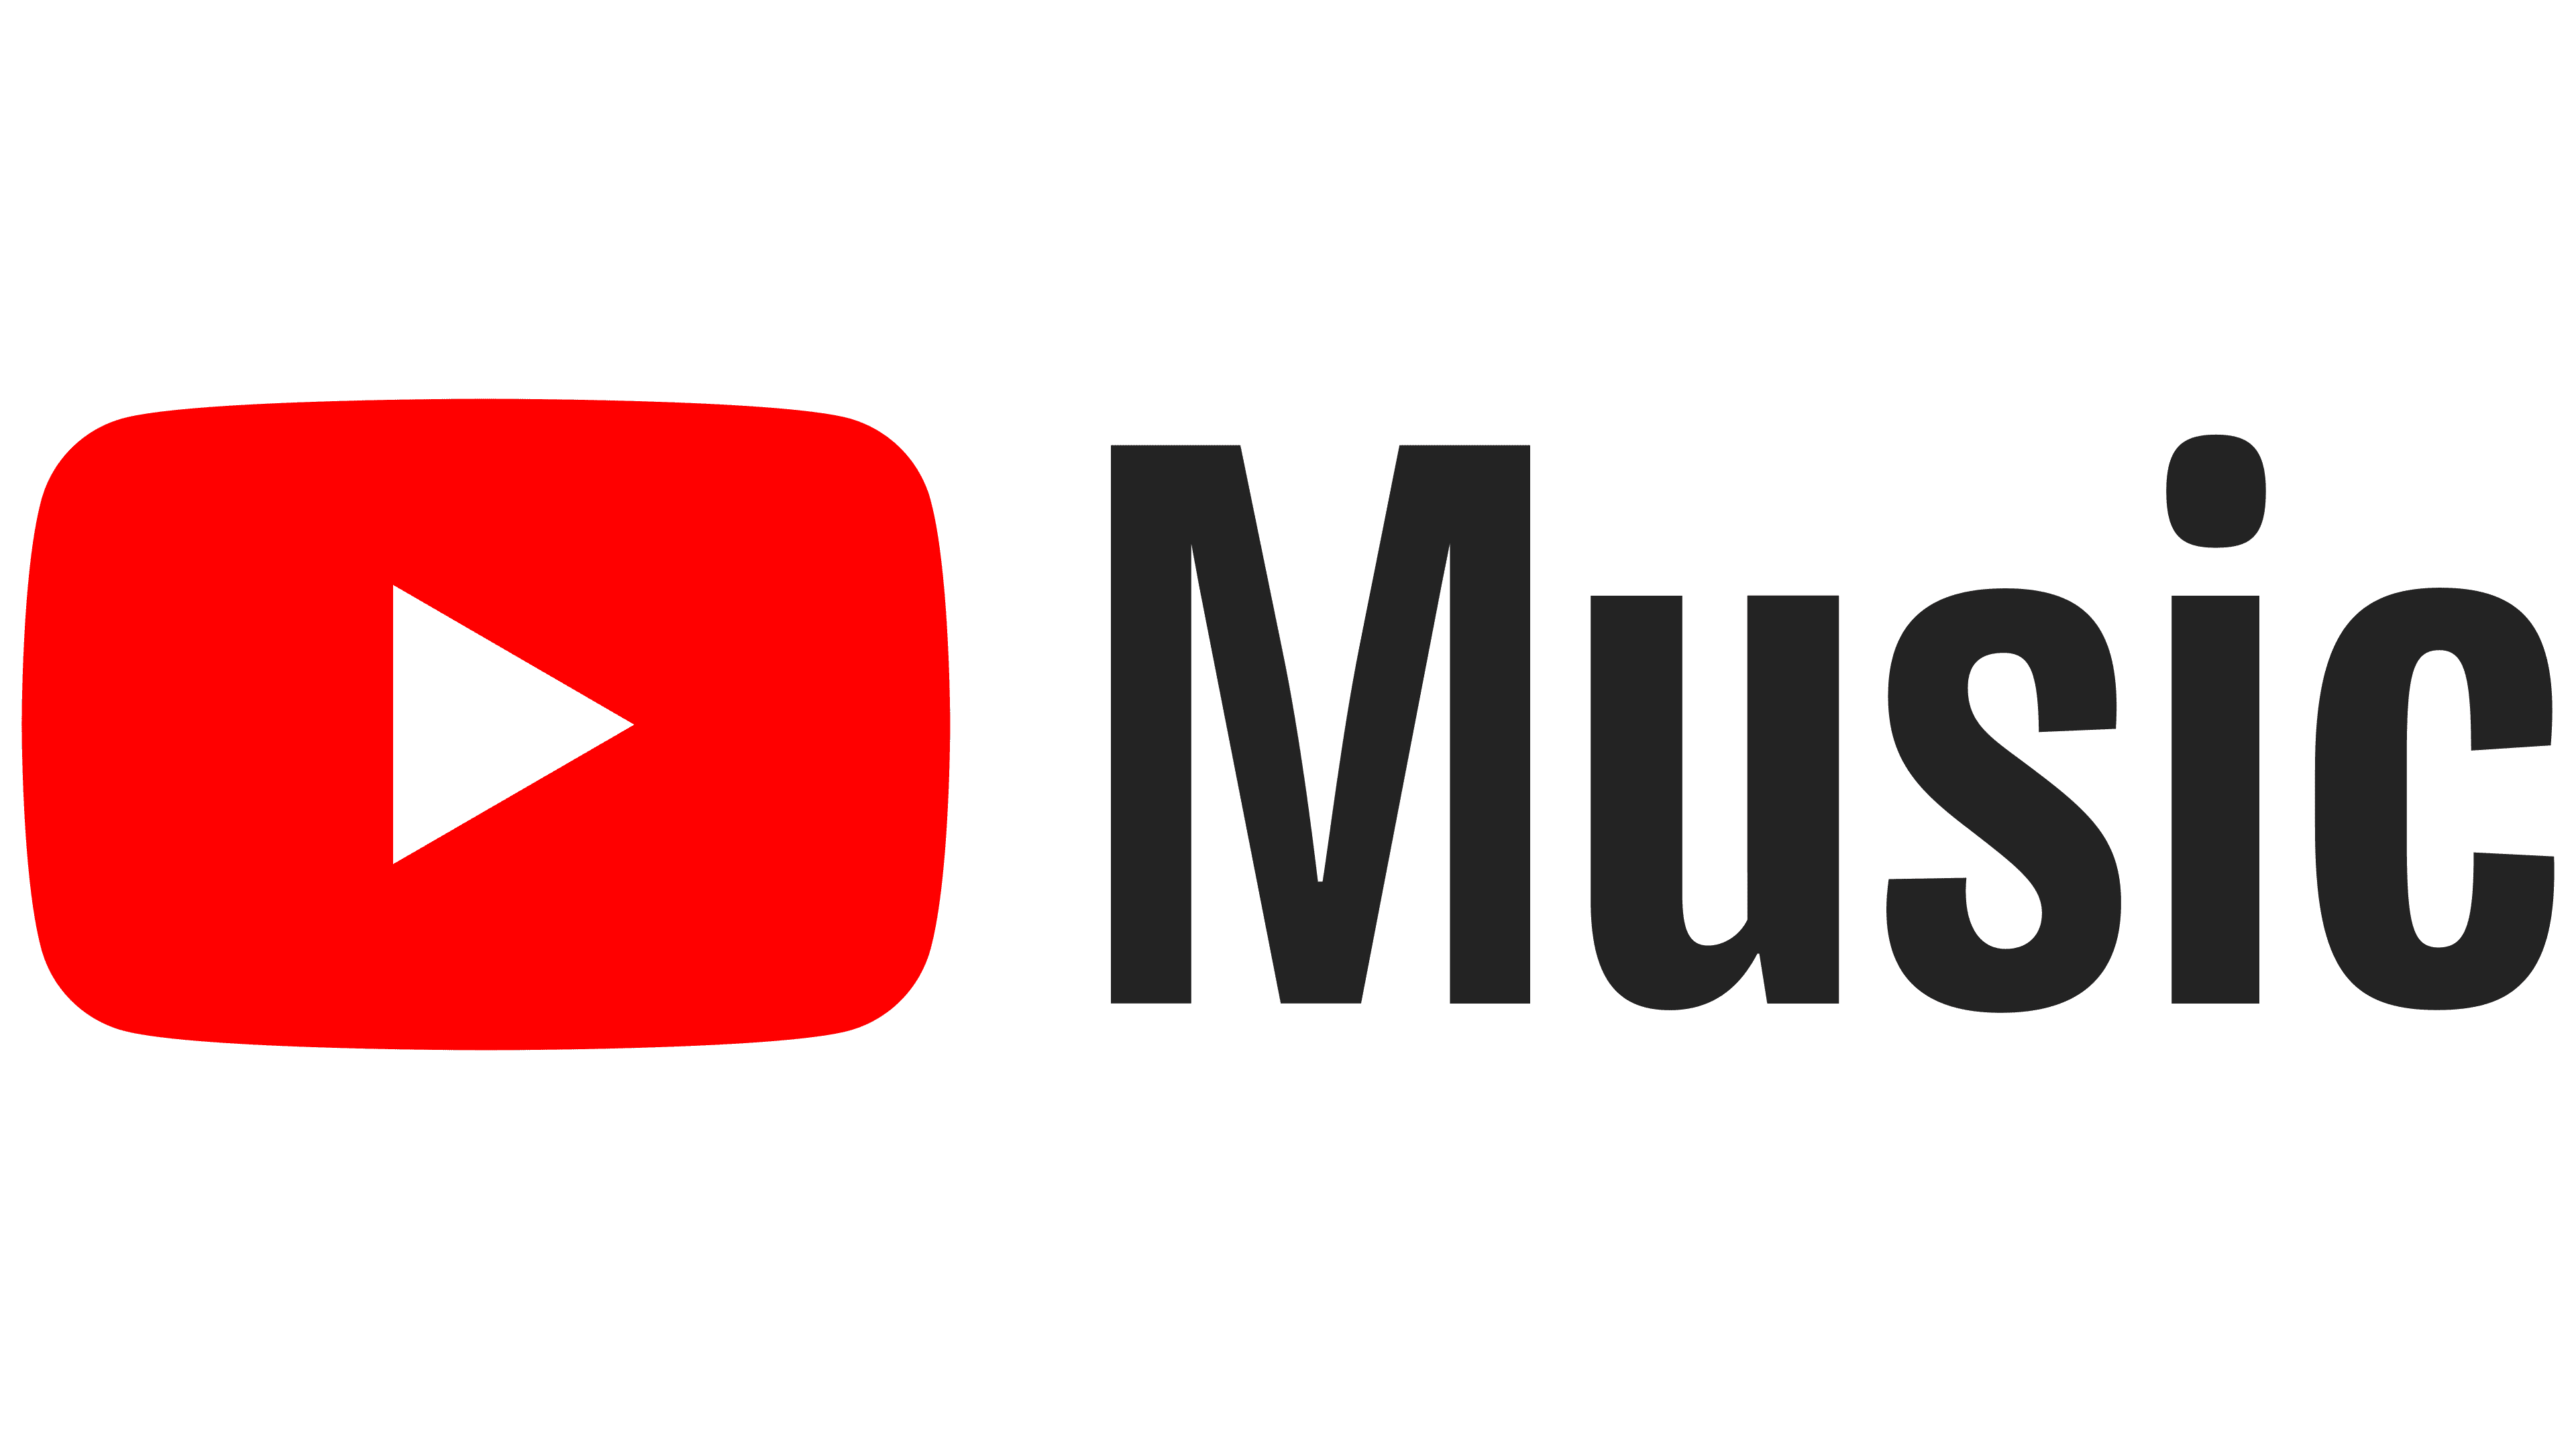 YouTube Music Logo - YouTube Music Logo, symbol, meaning ...